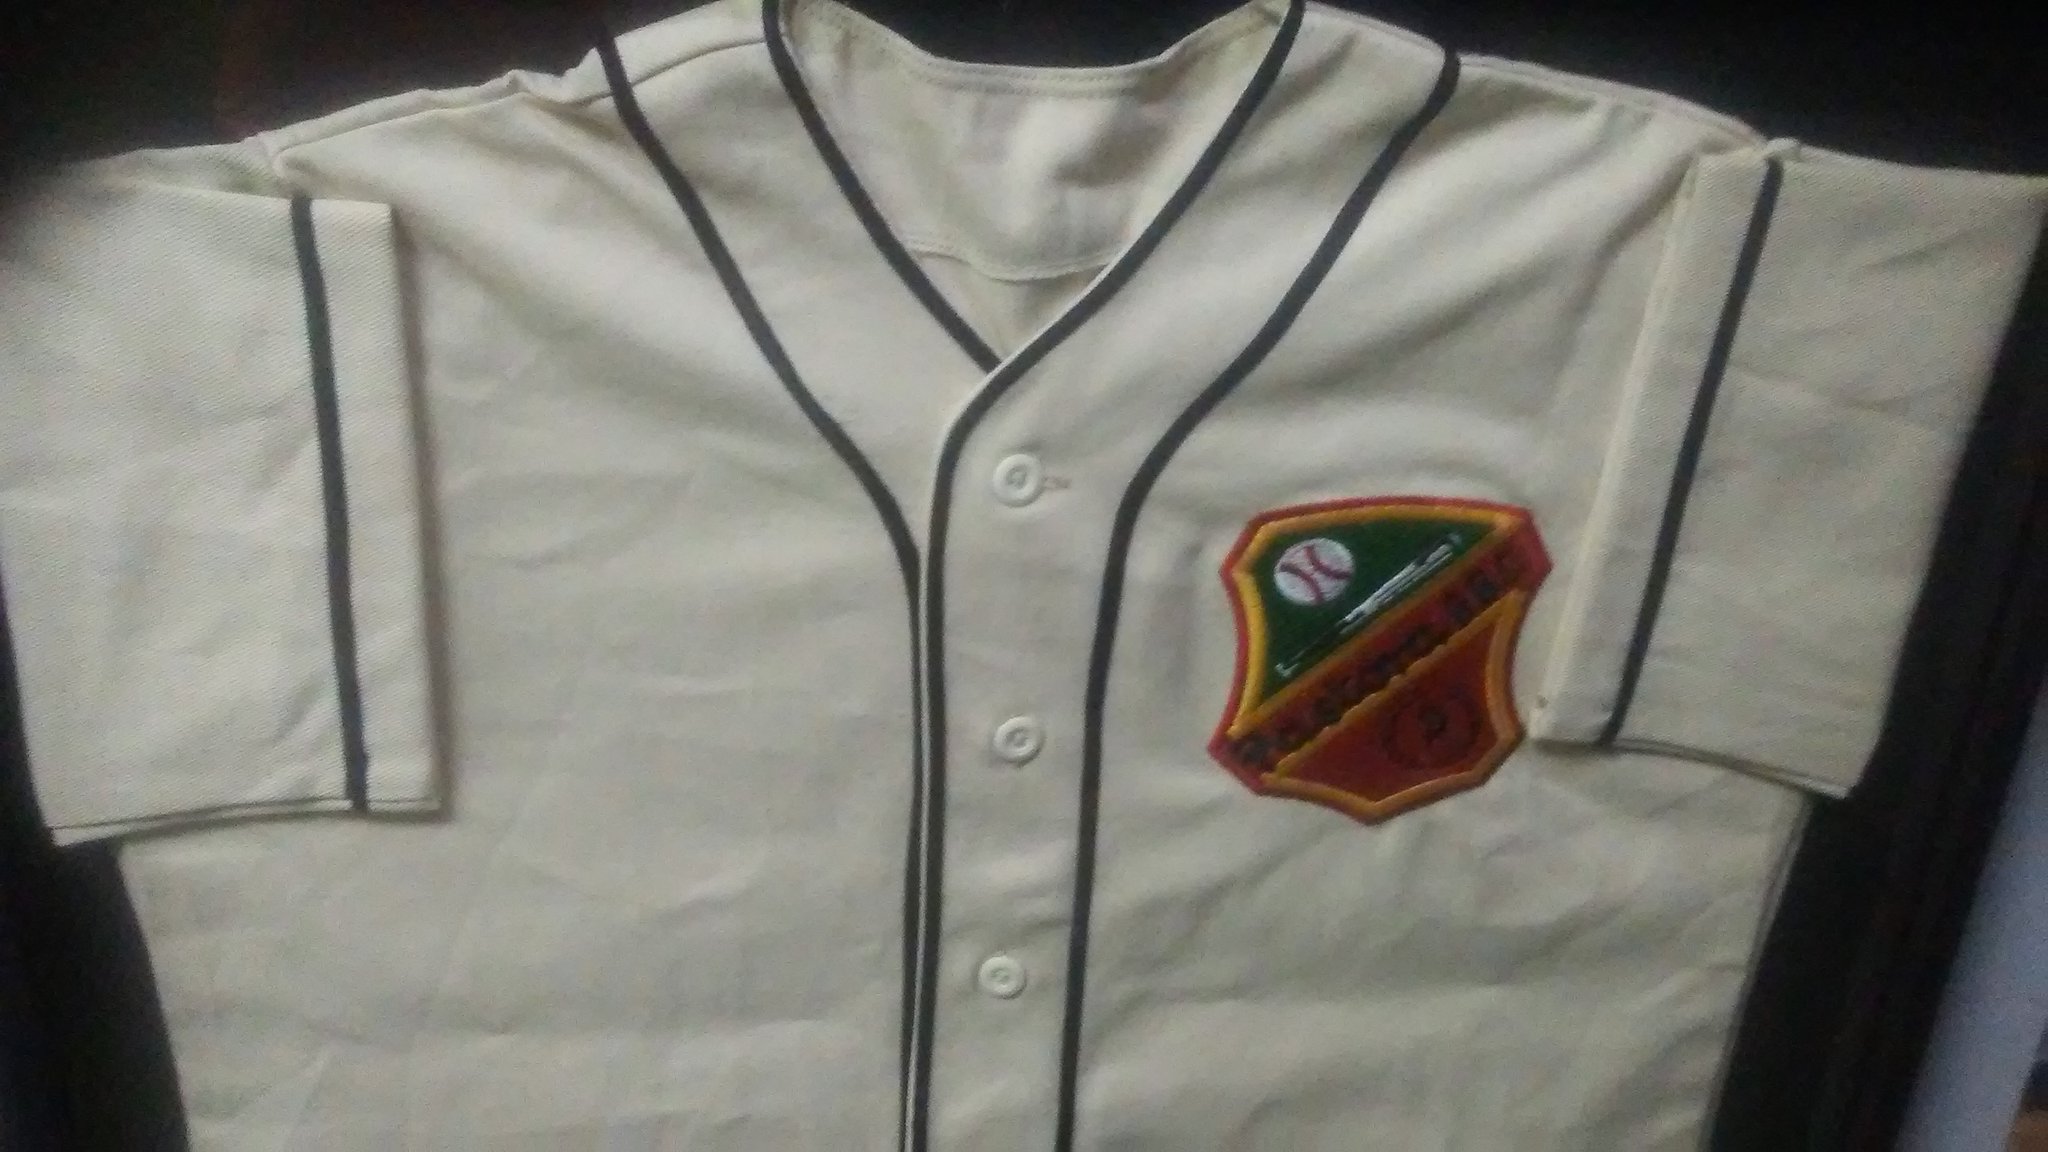 Águilas del Zulia on X: "Uniforme del equipo Pastora que participó en la Liga Occidental de Béisbol en el museo del béisbol zuliano. https://t.co/1Jw4b64fDQ" / X